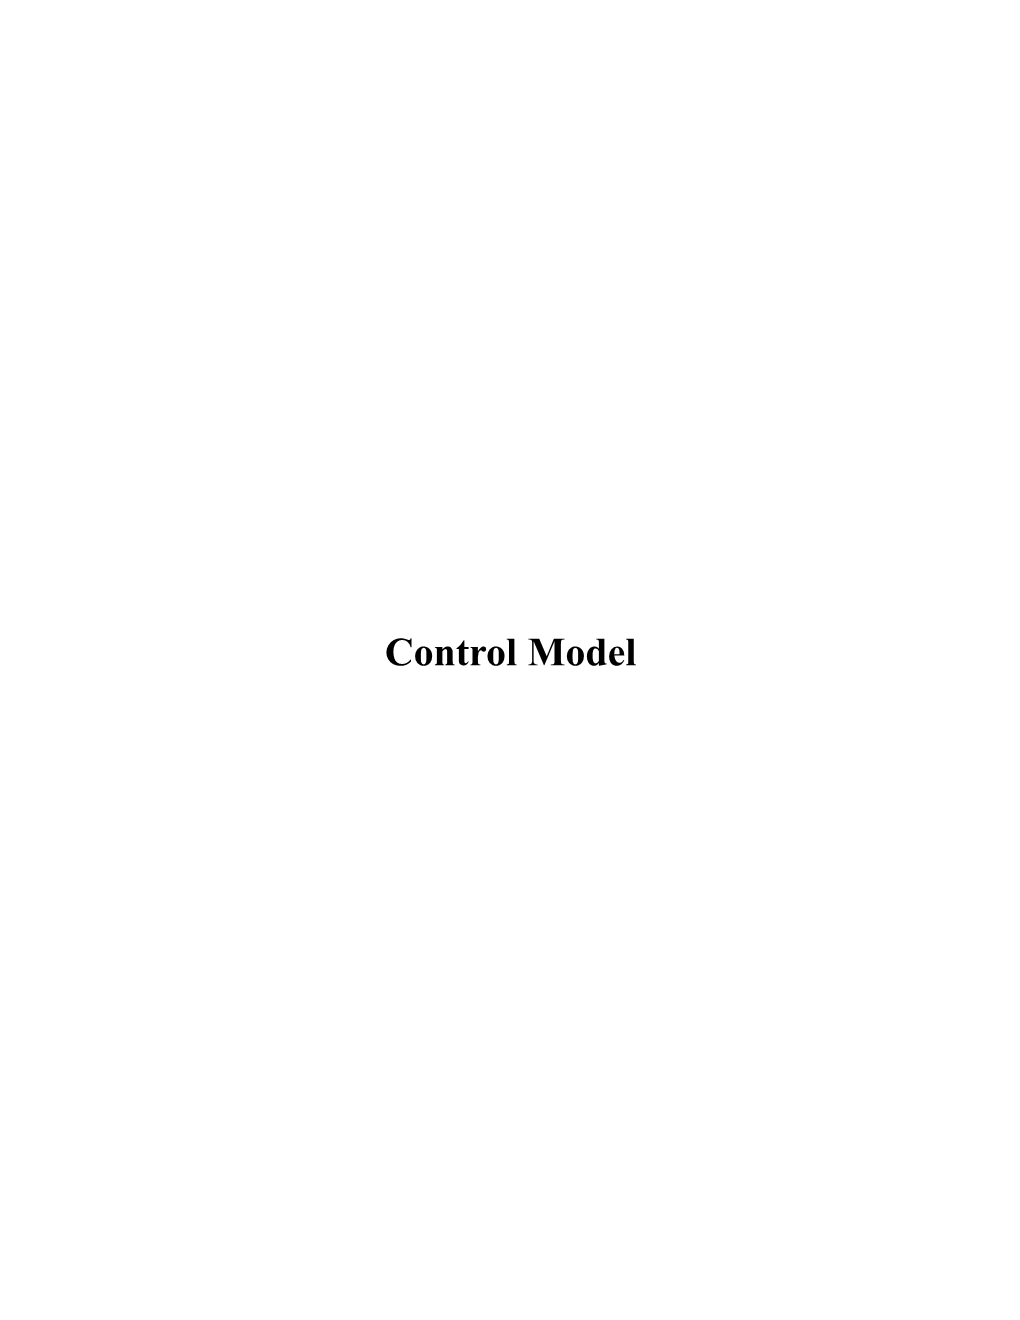 Control Model NCA-Savanna Control Model